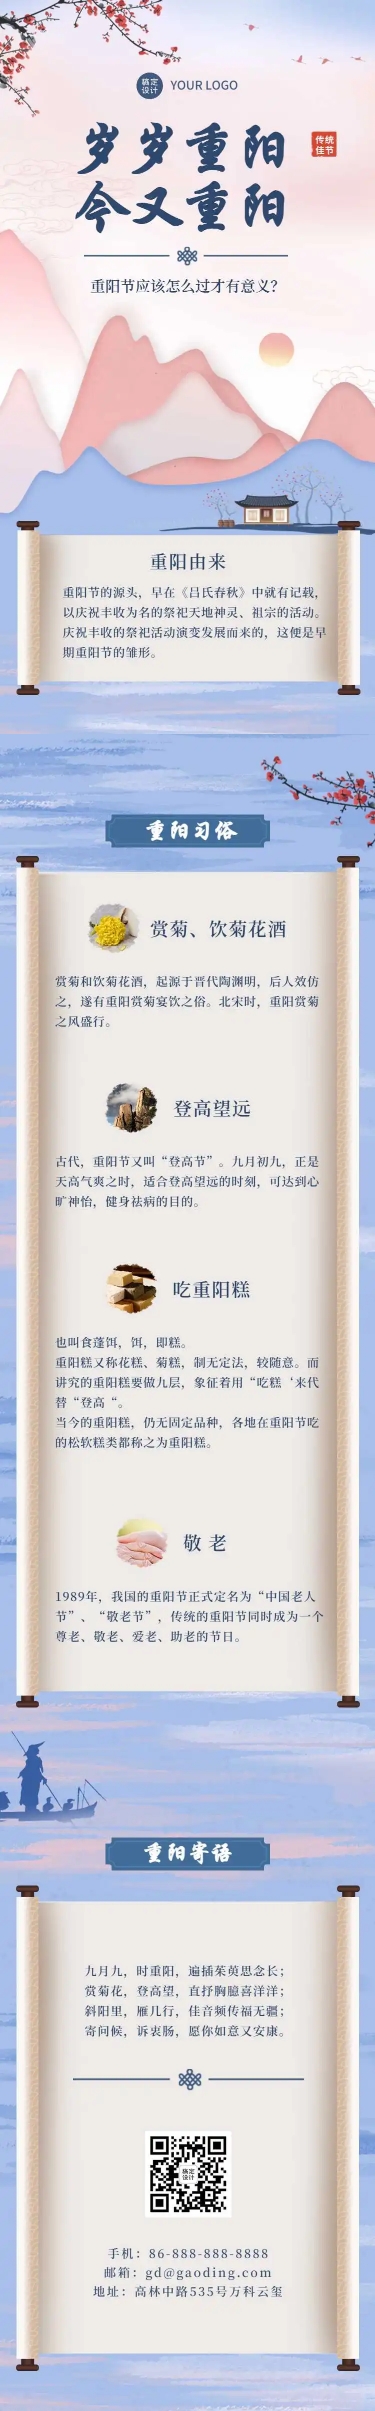 H5长页中国风插画重阳节节日习俗科普